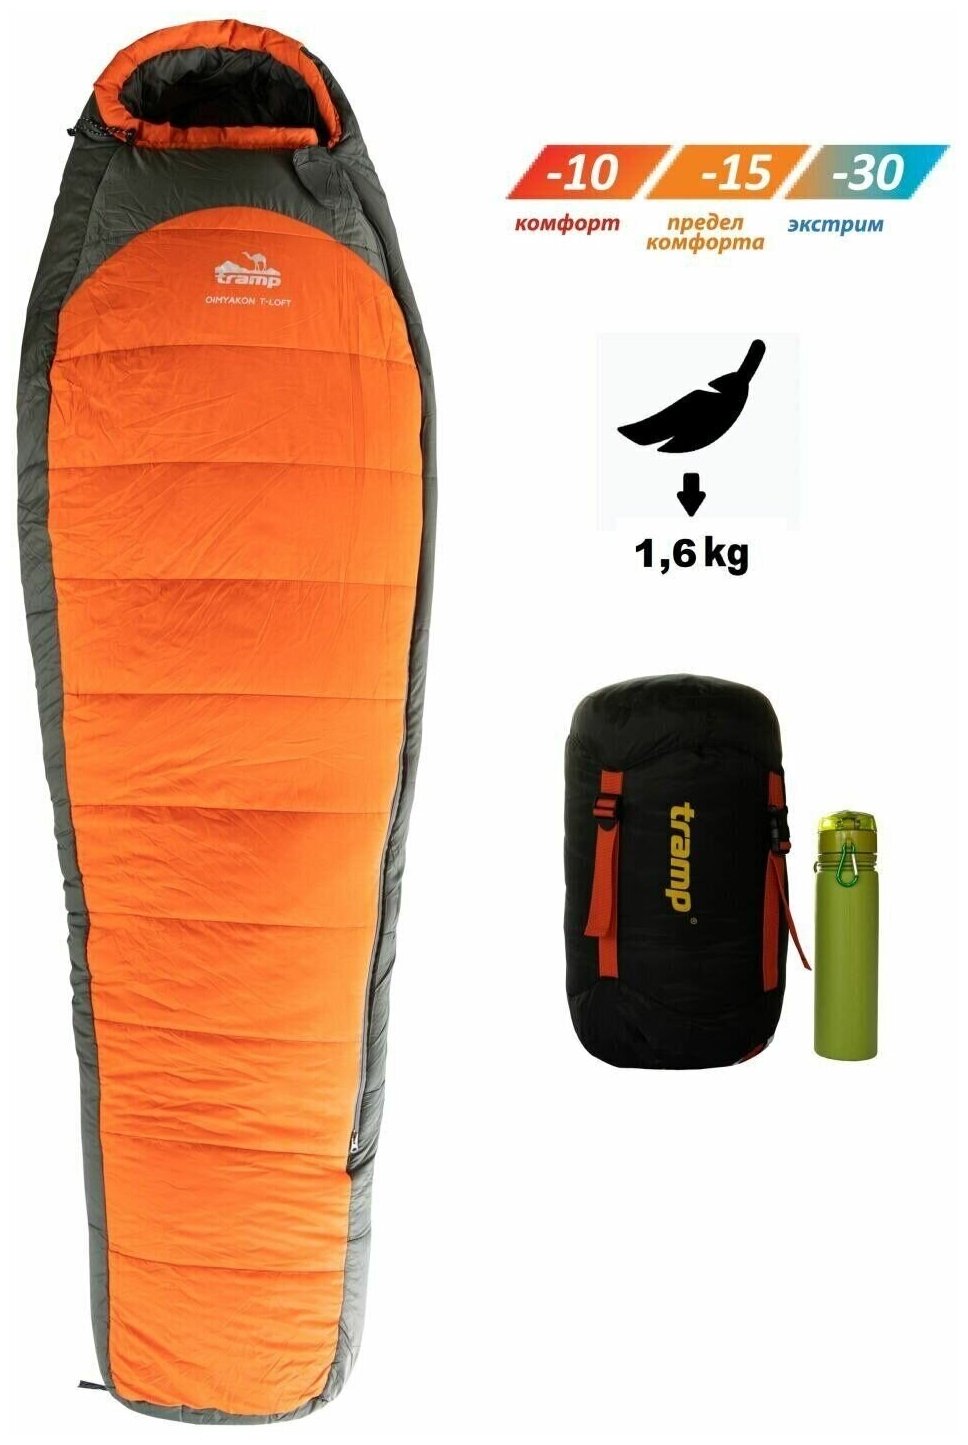 Tramp мешок спальный Oimyakon T-Loft Compact оранжевый правый